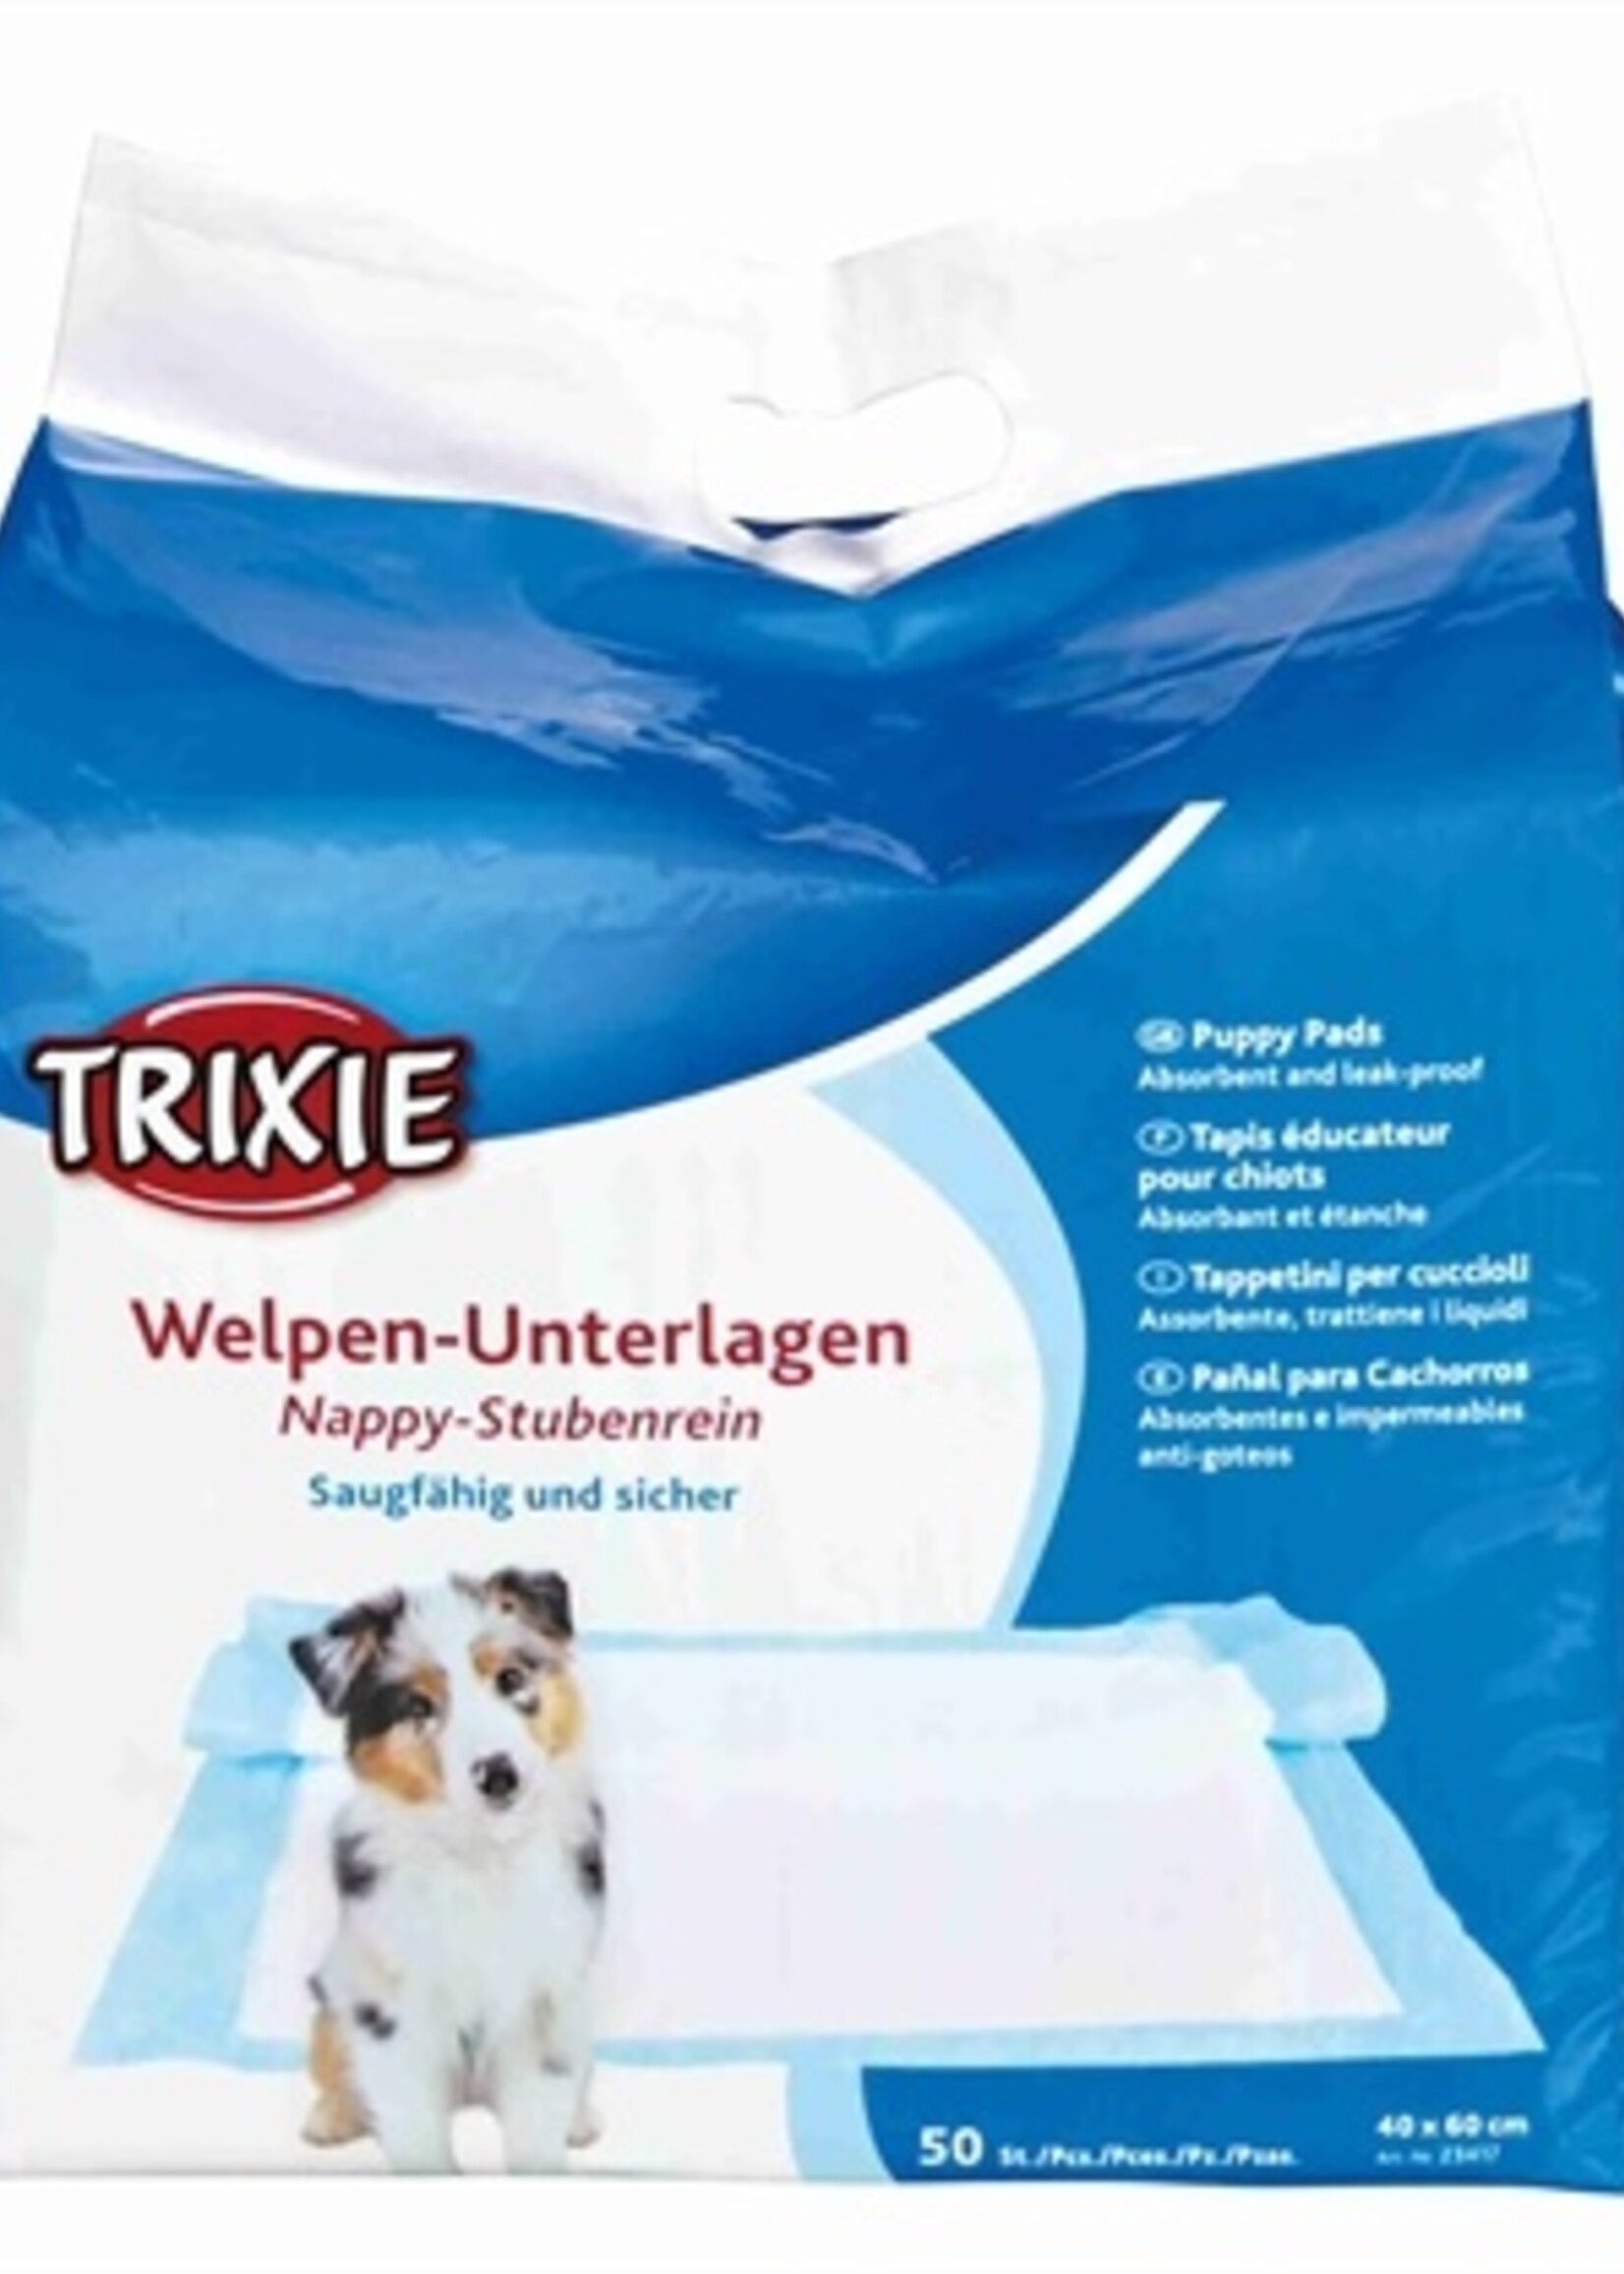 Trixie Trixie puppypads nappy